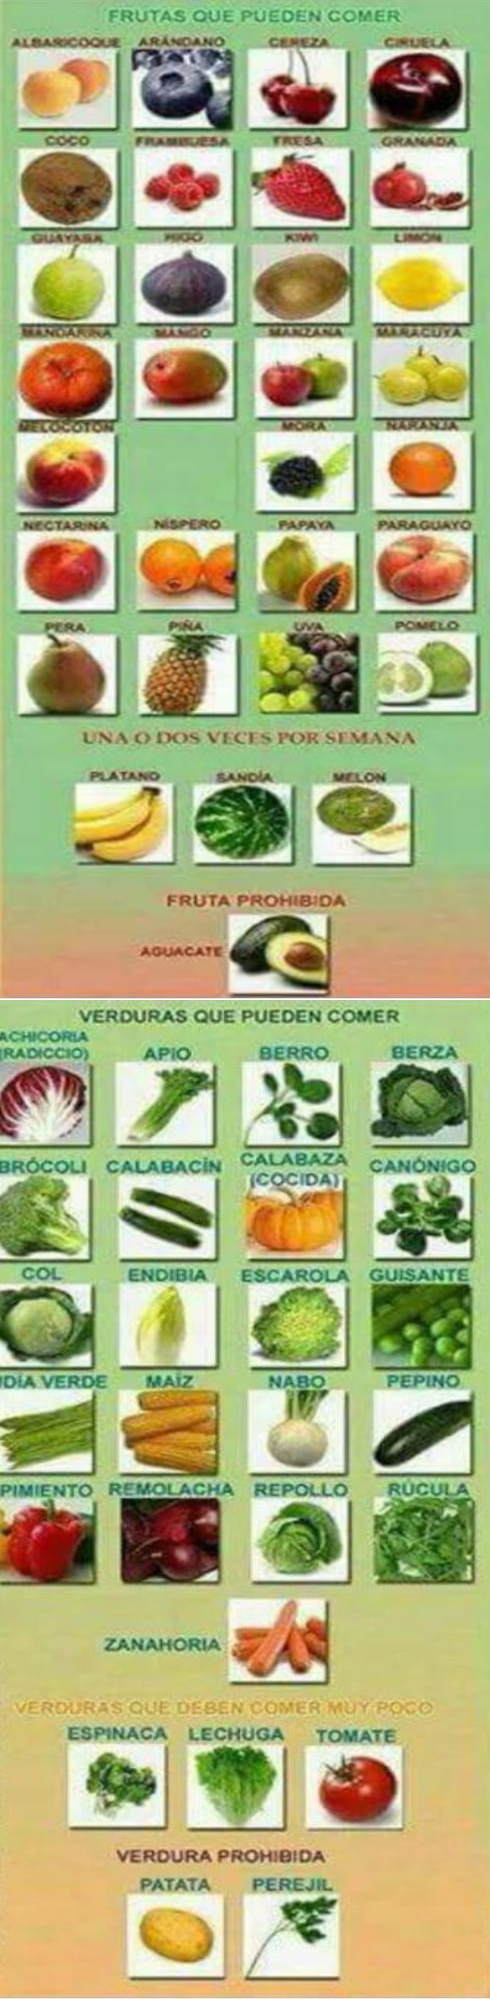 Fruta y verd8ura para pajaros